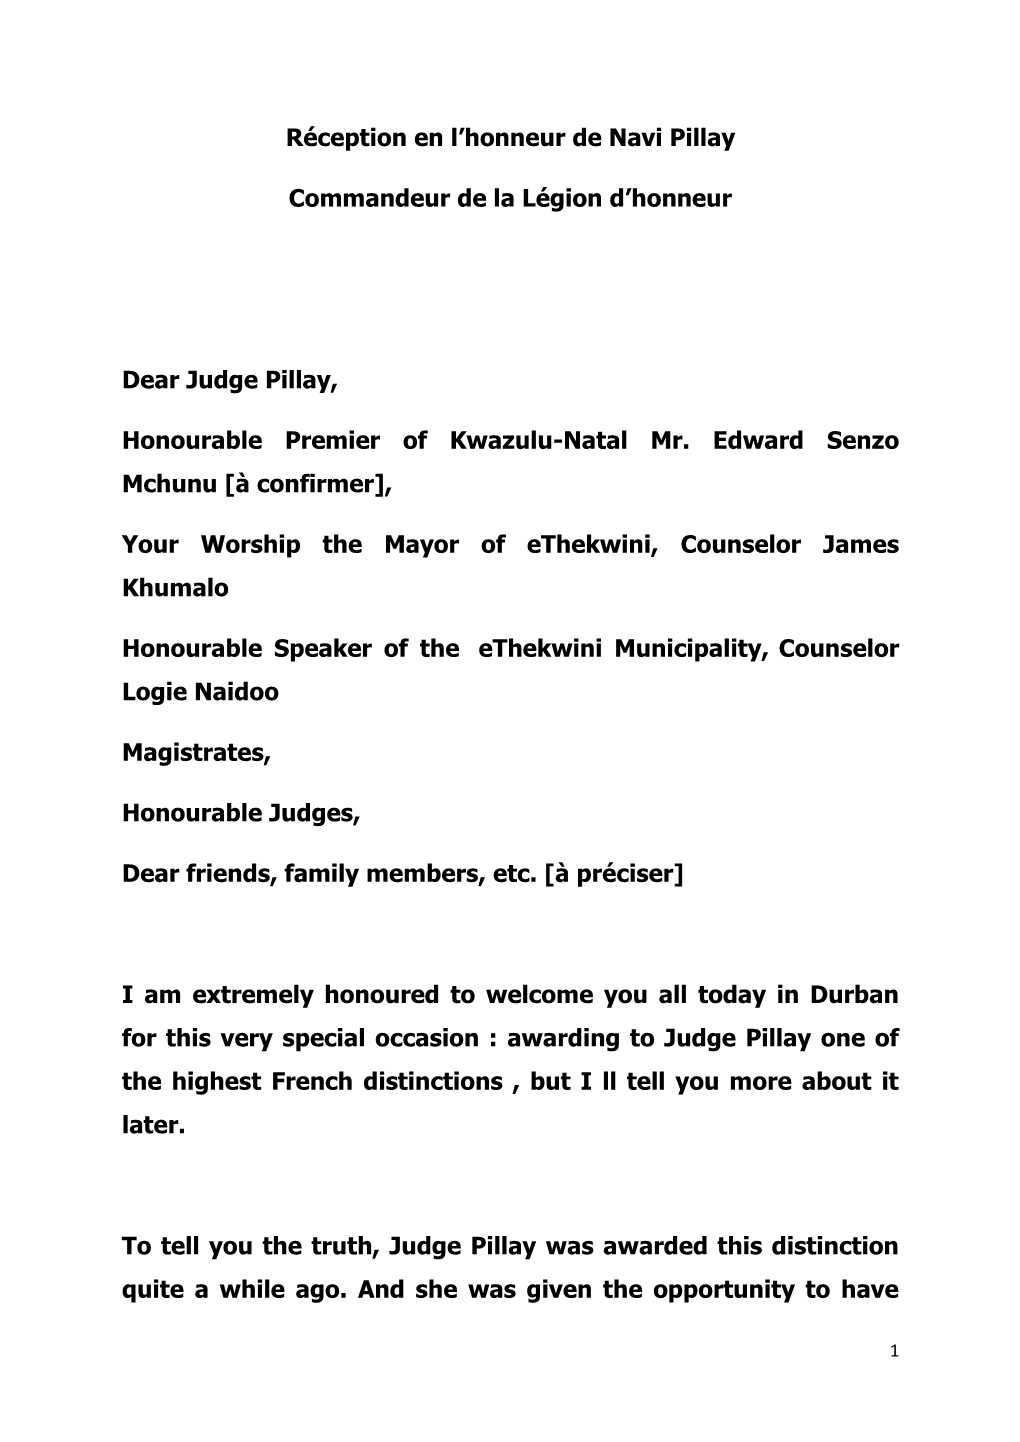 Dear Judge Pillay